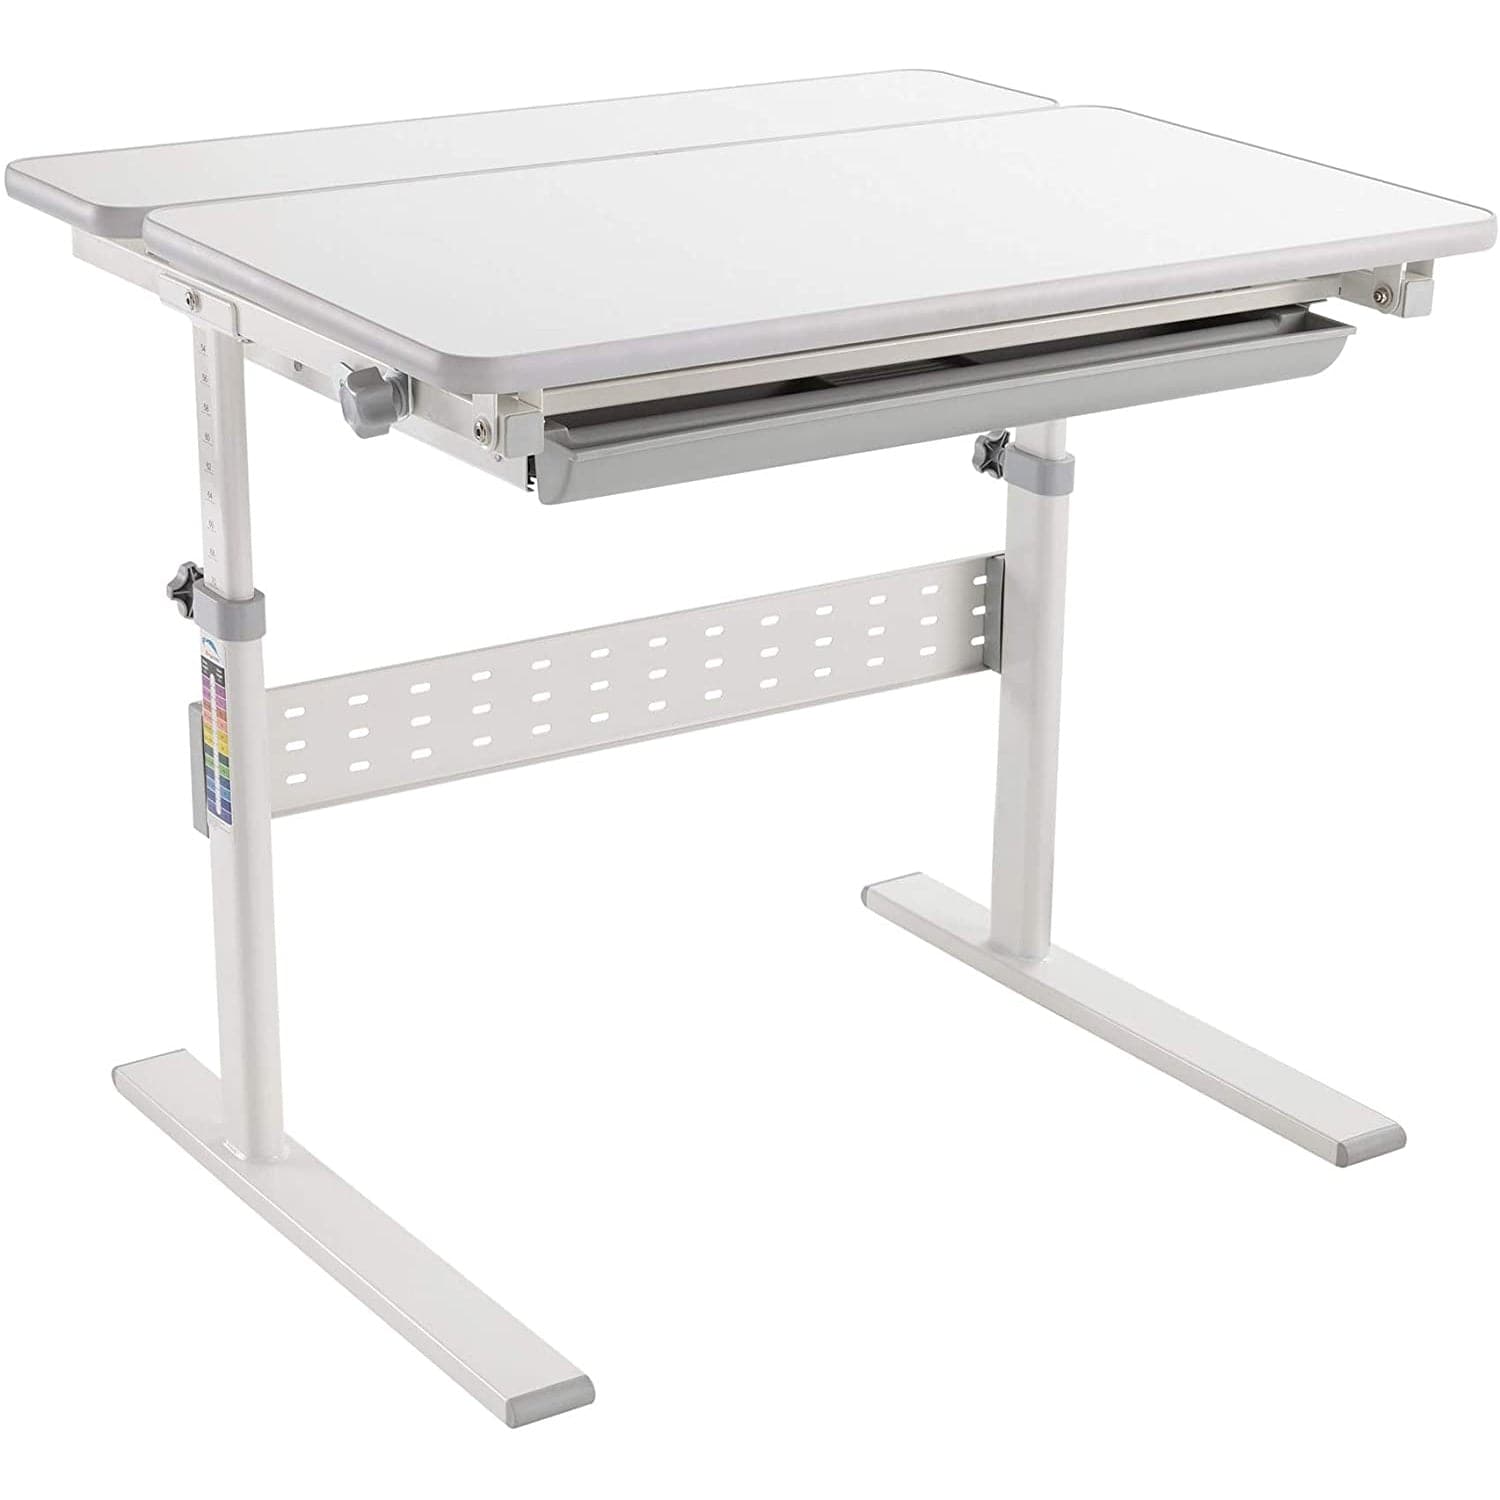 http://mount-it.com/cdn/shop/products/height-adjustable-kids-desk-for-children-k-12-455697.jpg?v=1687286128